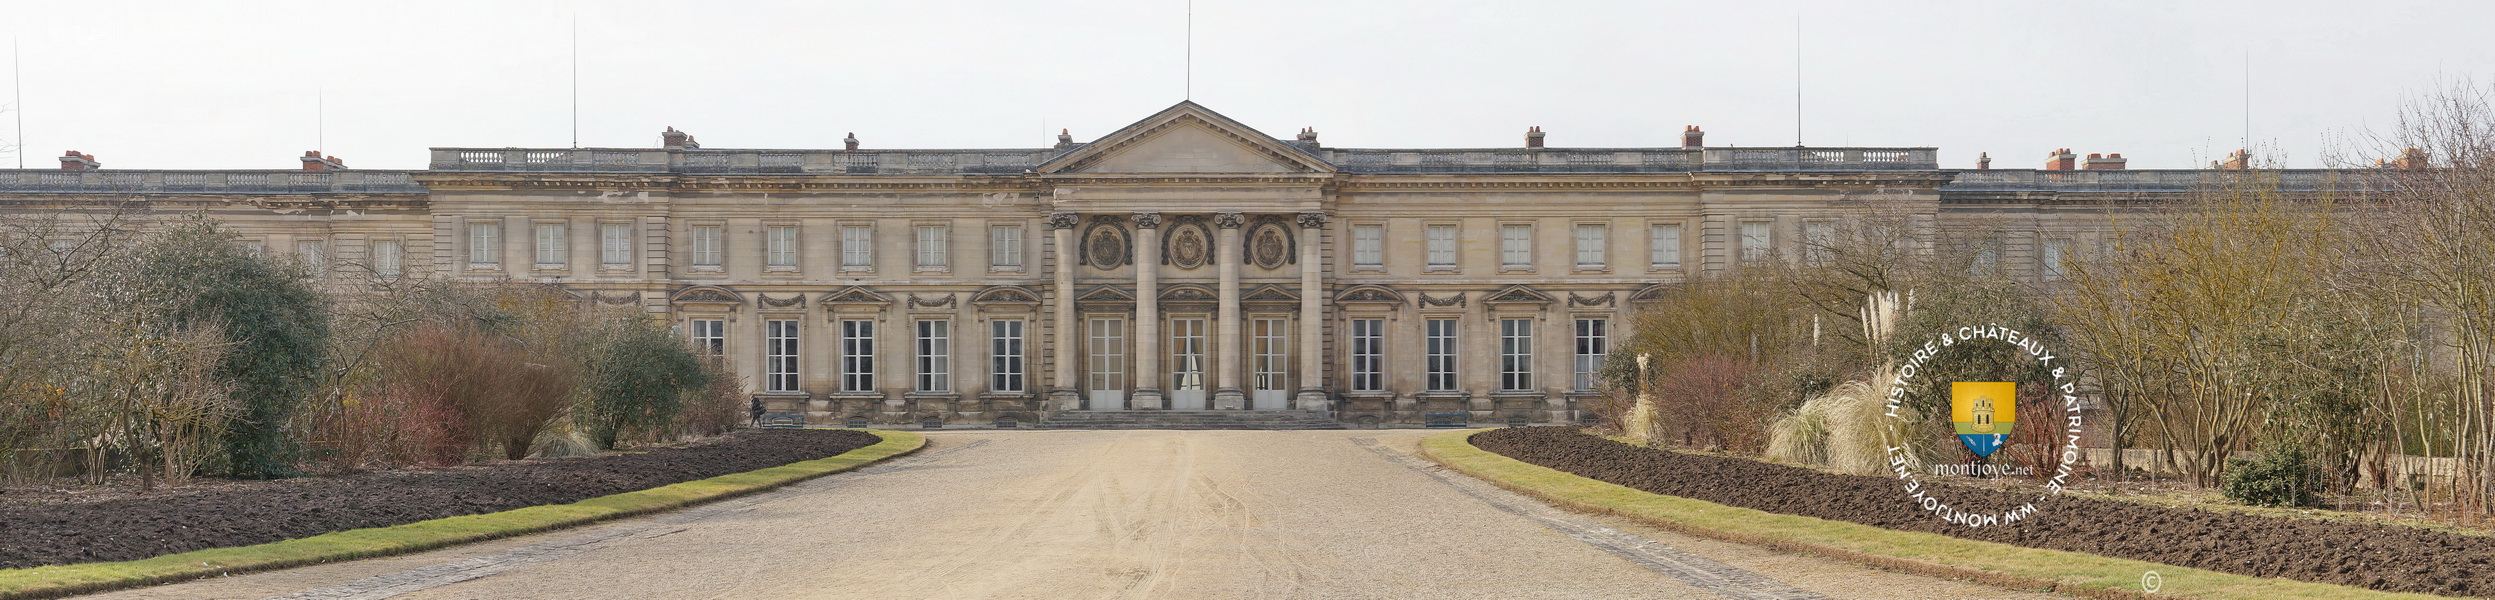 Palais National de Compiègne, aujourd'hui un musée Impérial et de la Voiture, fut édifié au XVIIIe siècle par Louis XV